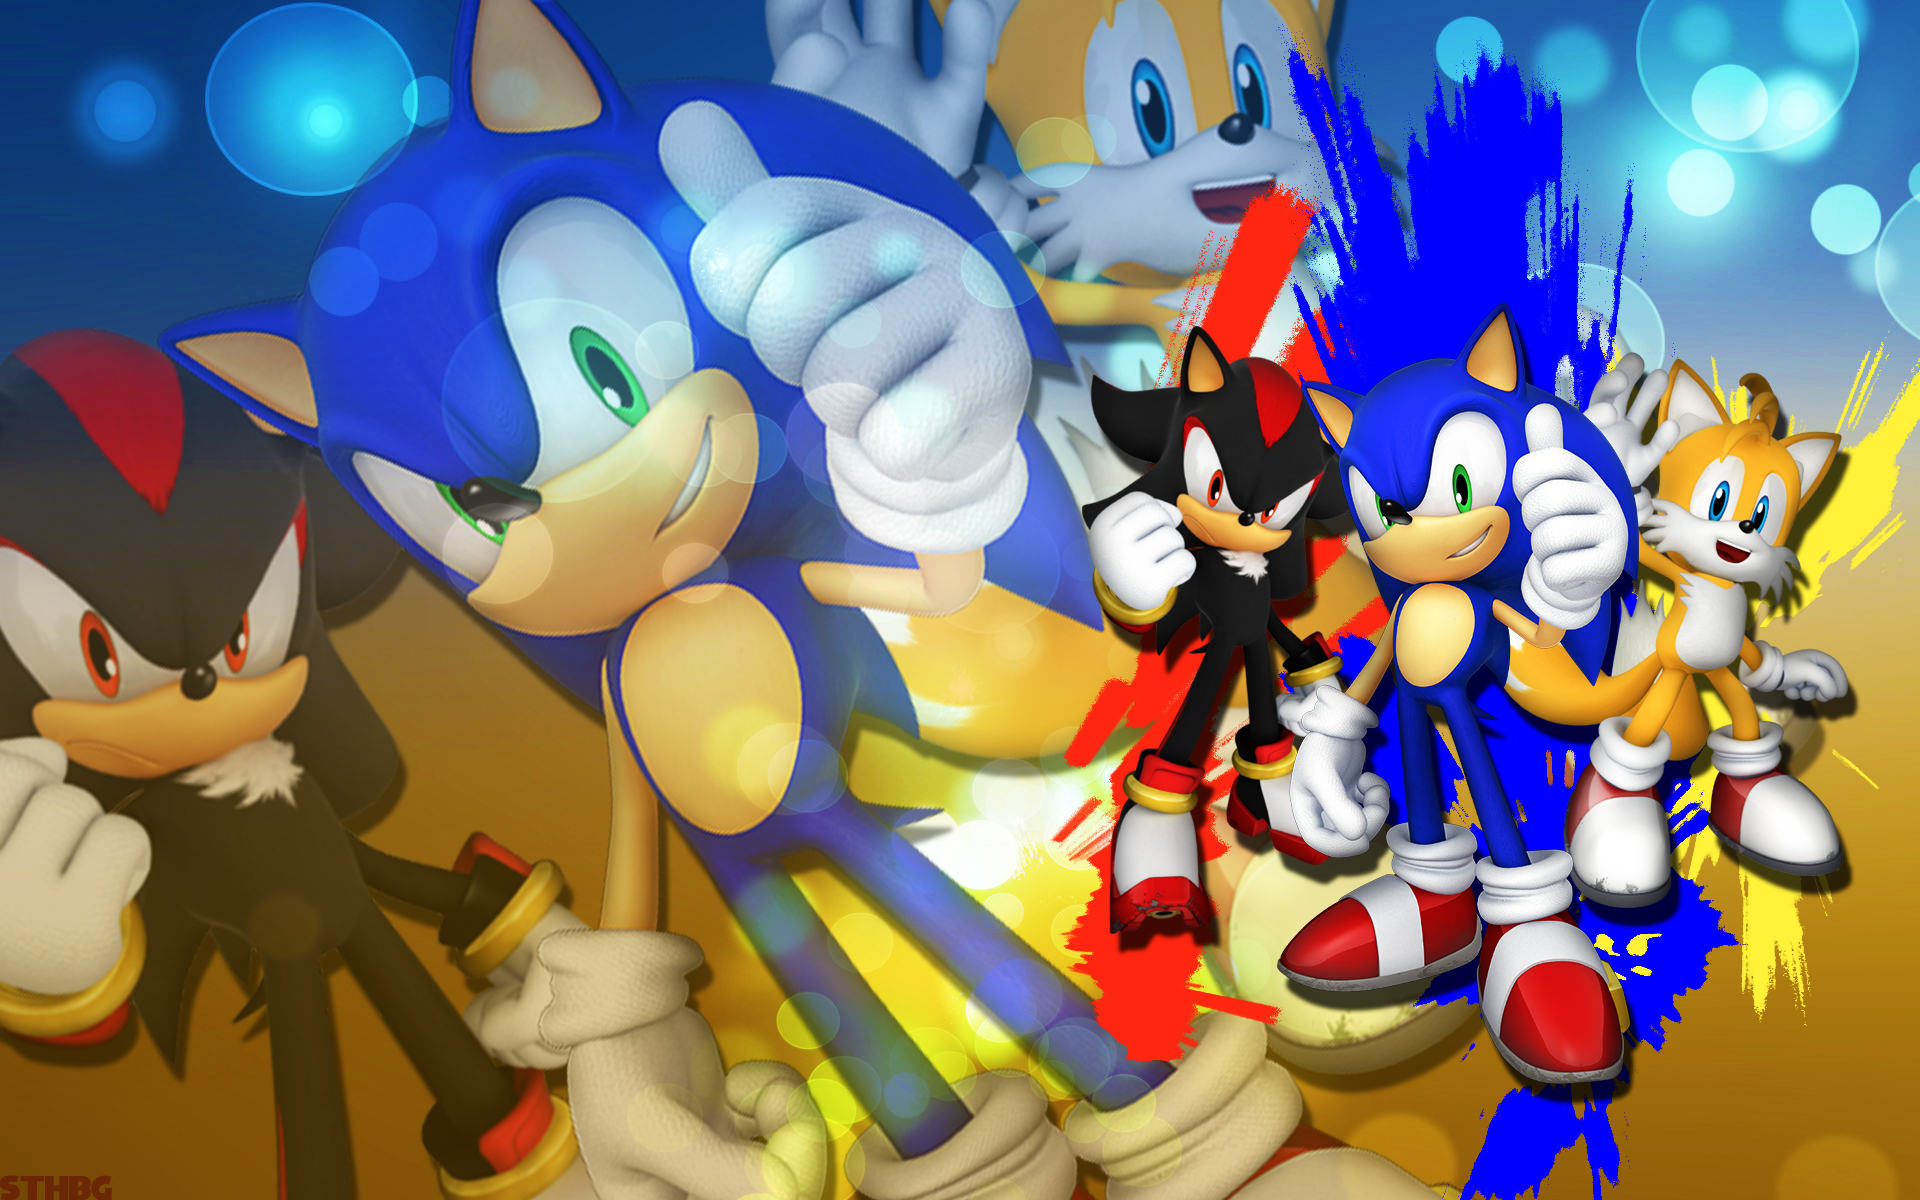 Скачать обои Sonic И Sega All Stars Racing на телефон бесплатно